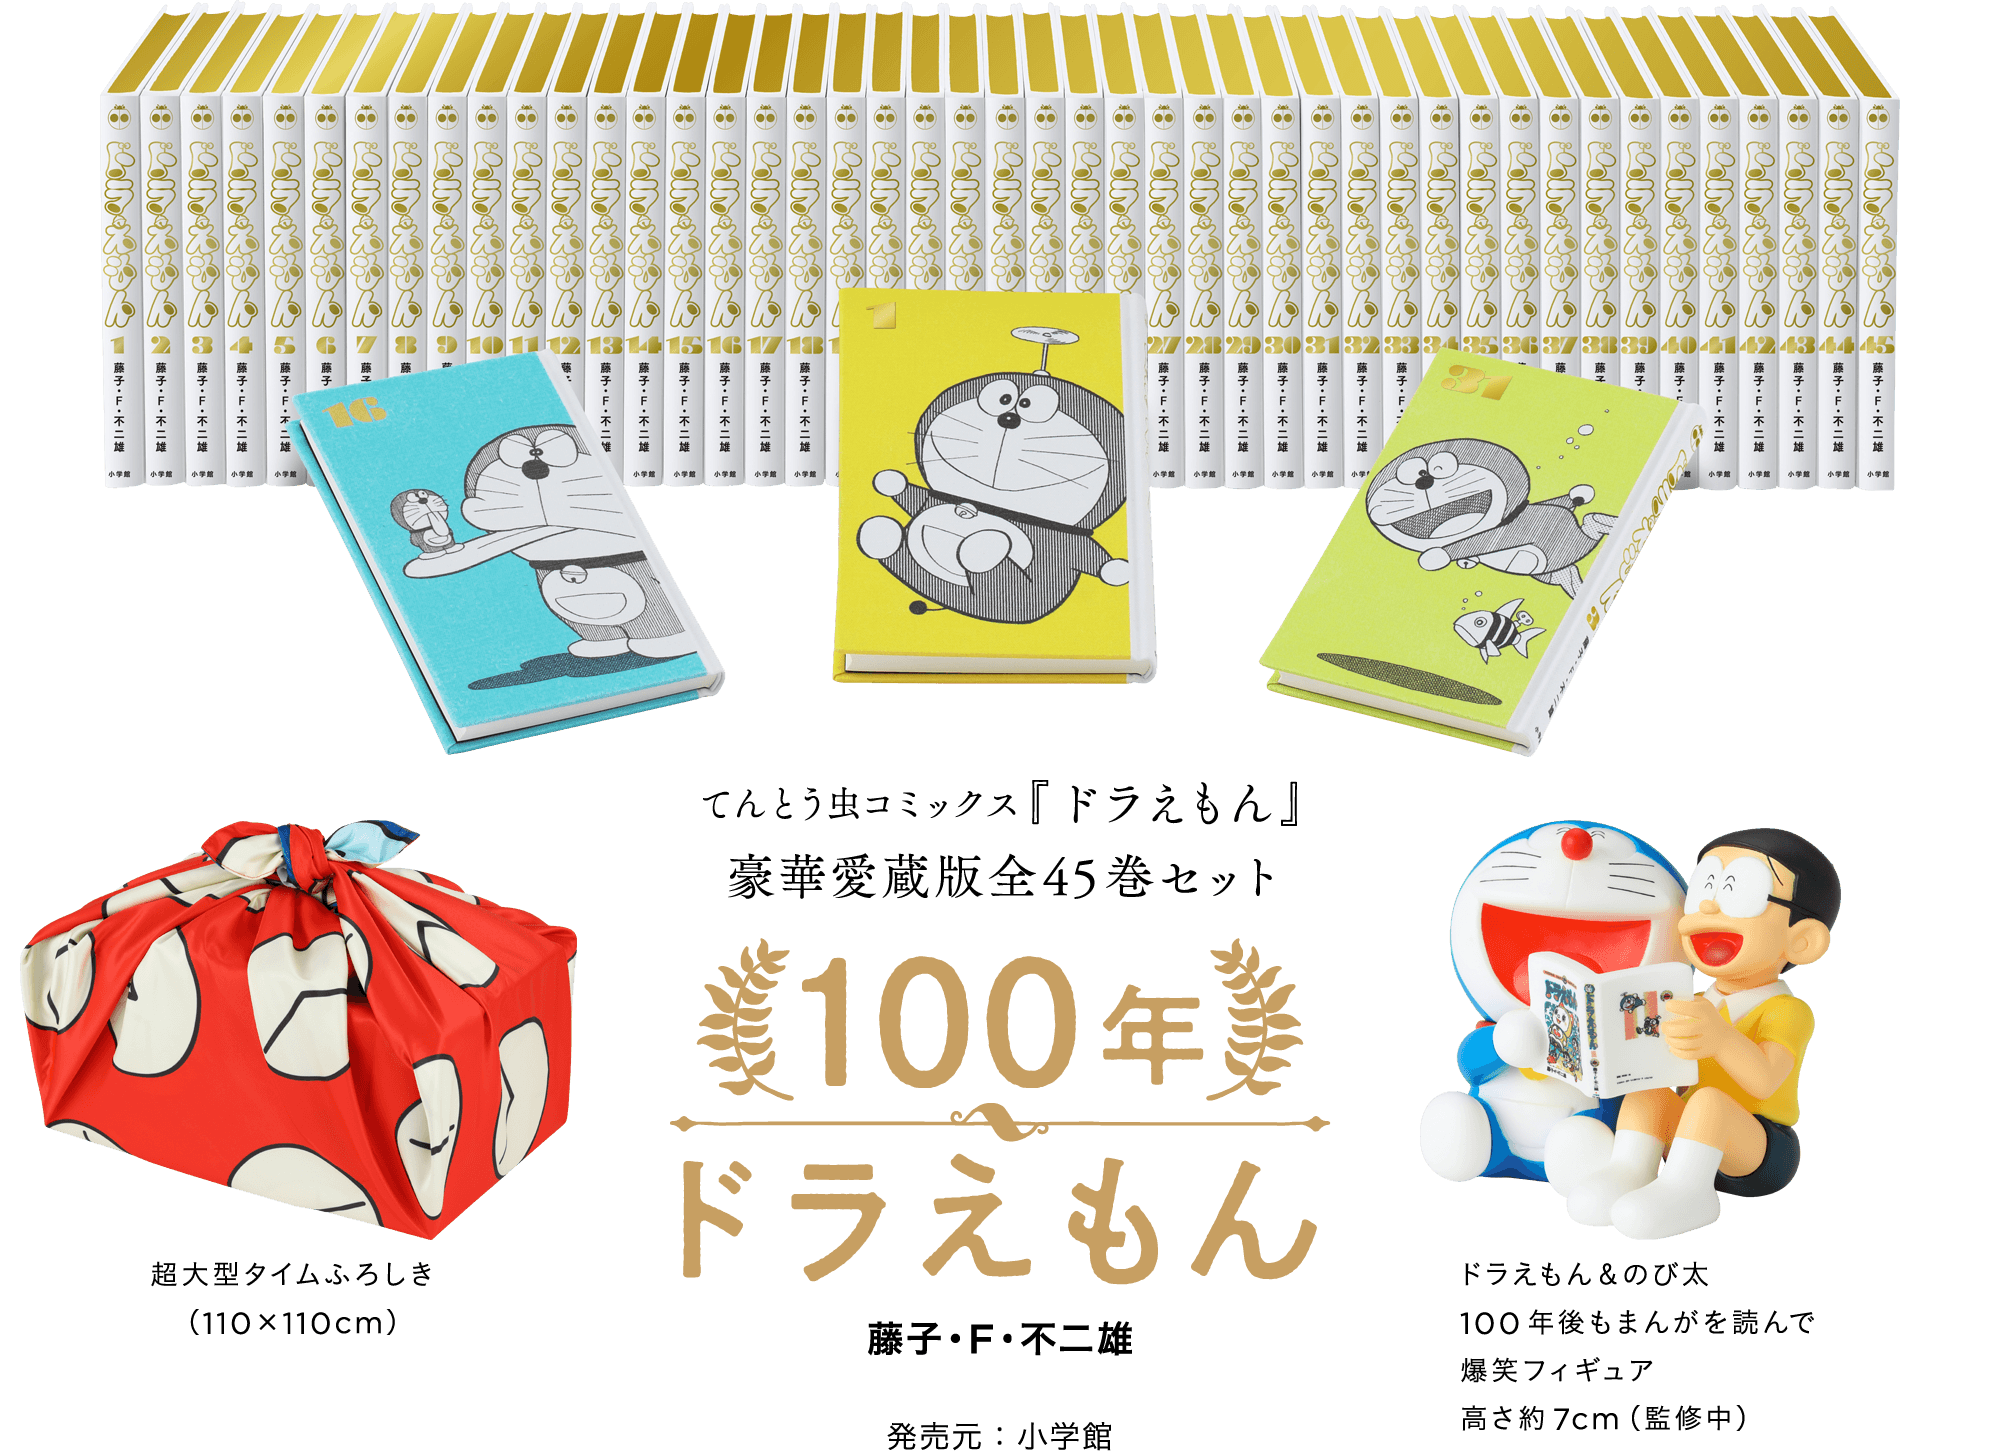 てんとう虫コミックス『ドラえもん』豪華愛蔵版全45巻セット100年ドラえもん